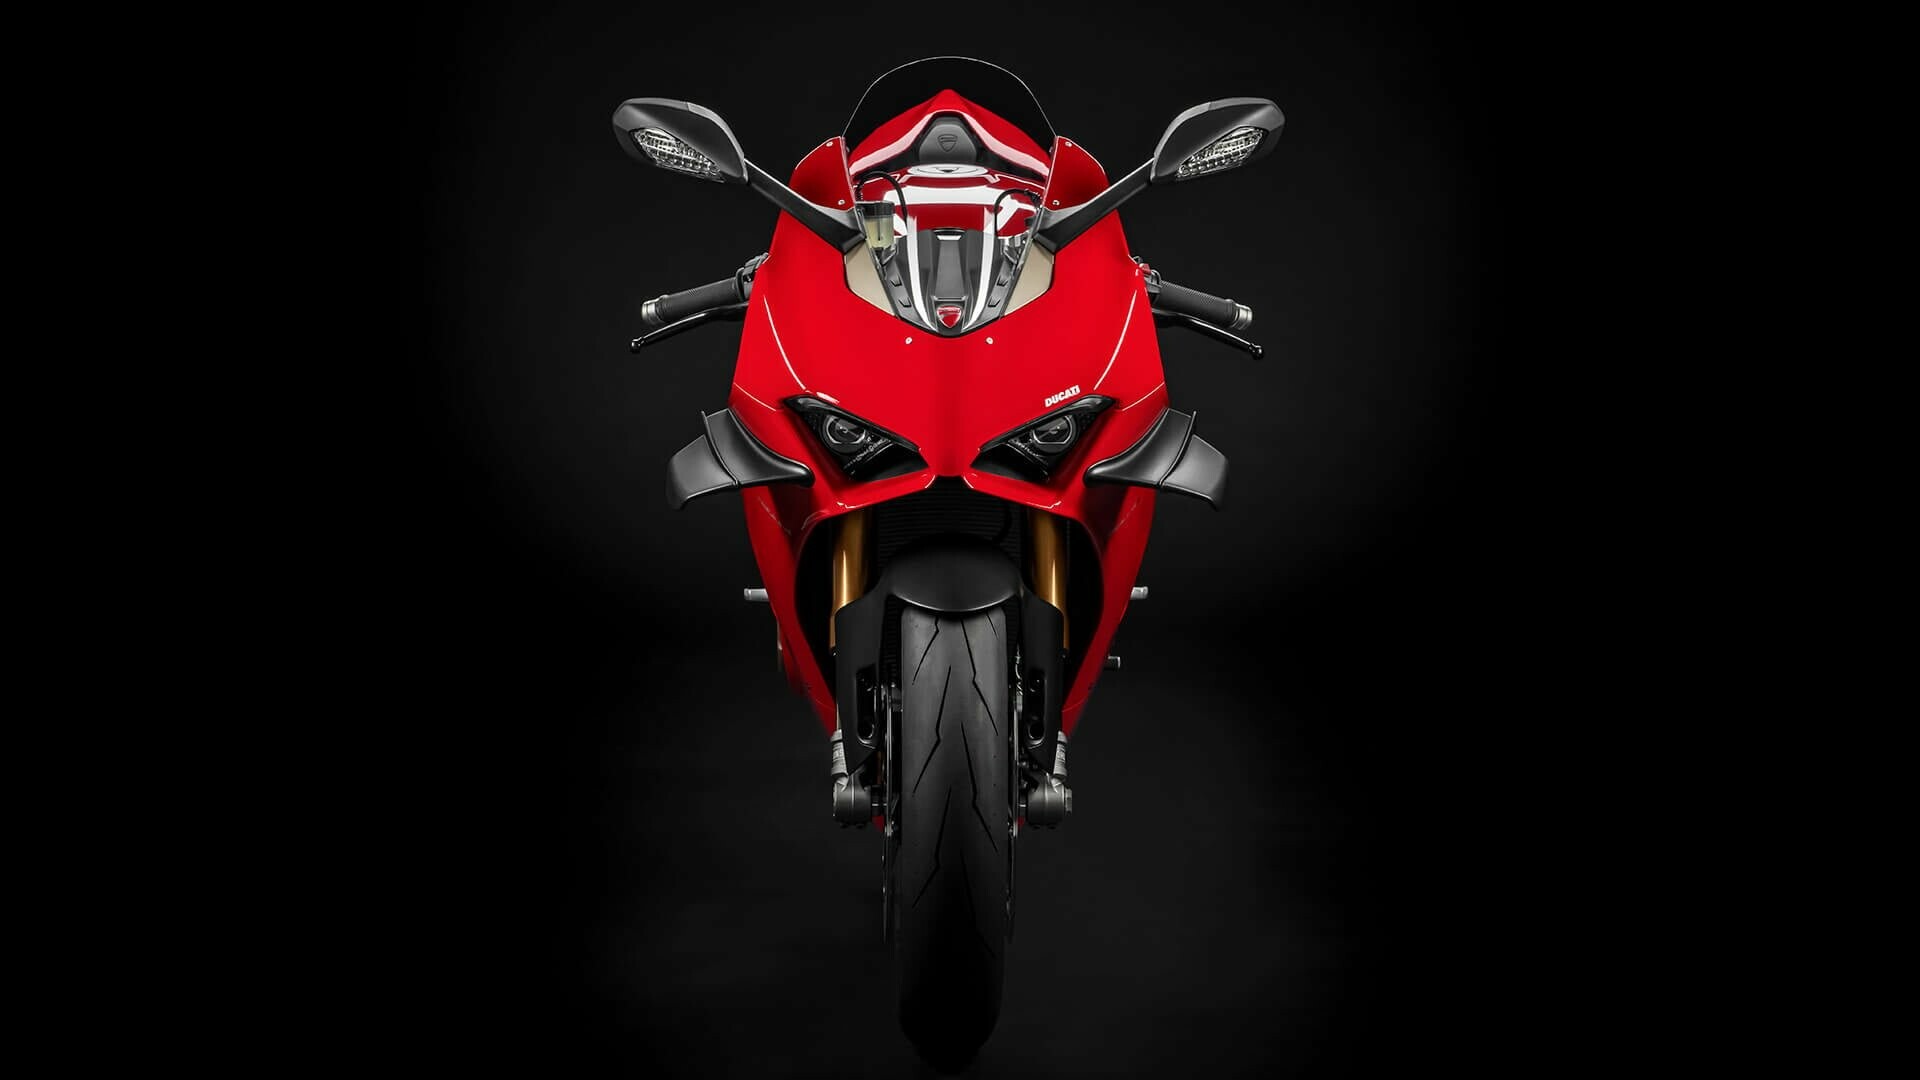 Bike: 1199 Panigale, A 1,198 cc (73.1 cu in) Ducati sport motorcycle. 1920x1080 Full HD Background.